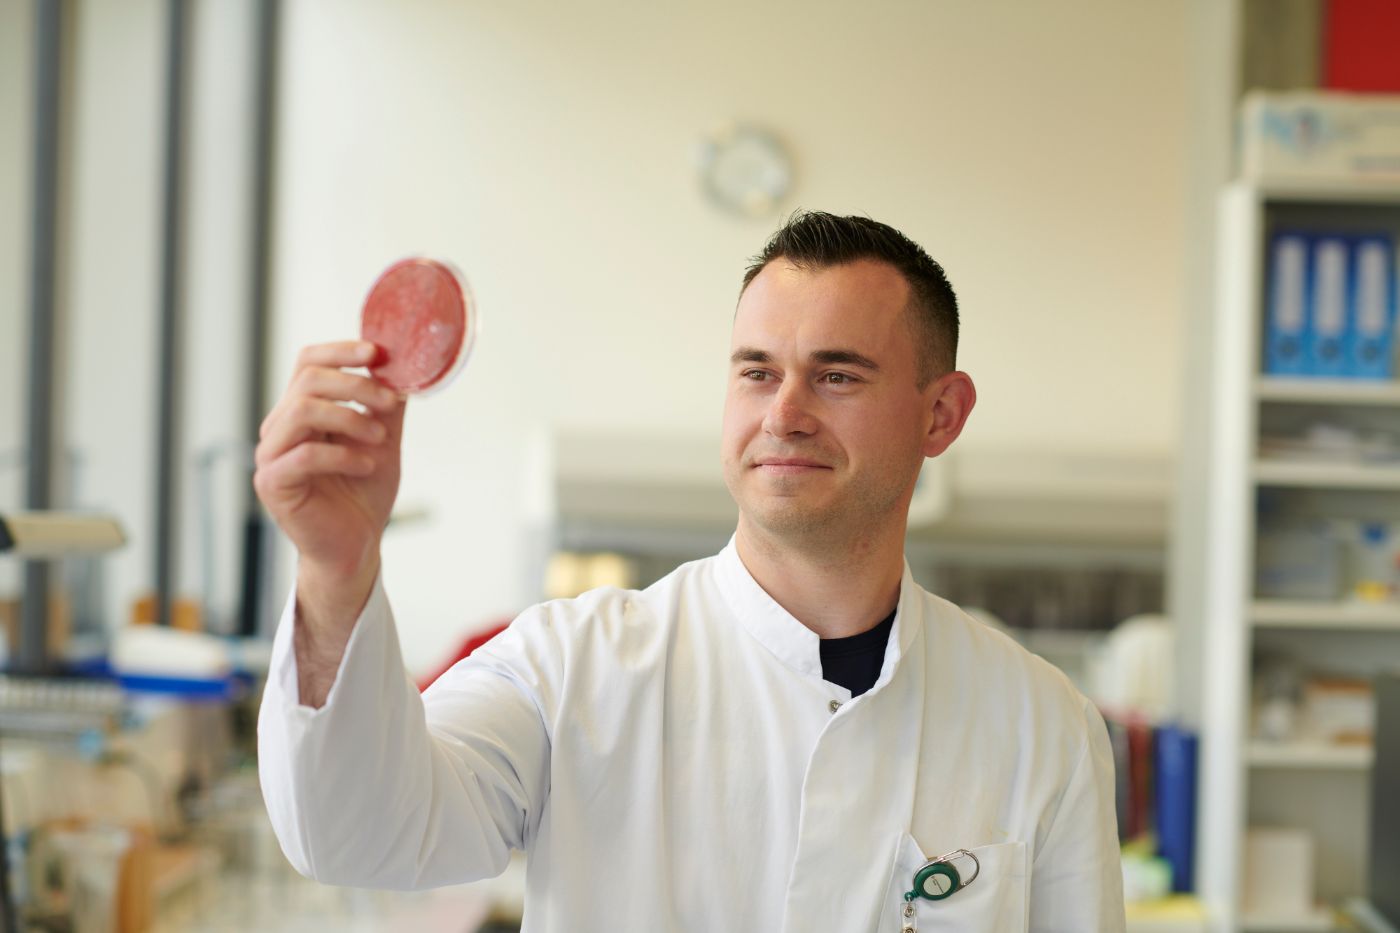 Mitarbeiter von der Bakteriologie prüft Probe auf der Petrischale